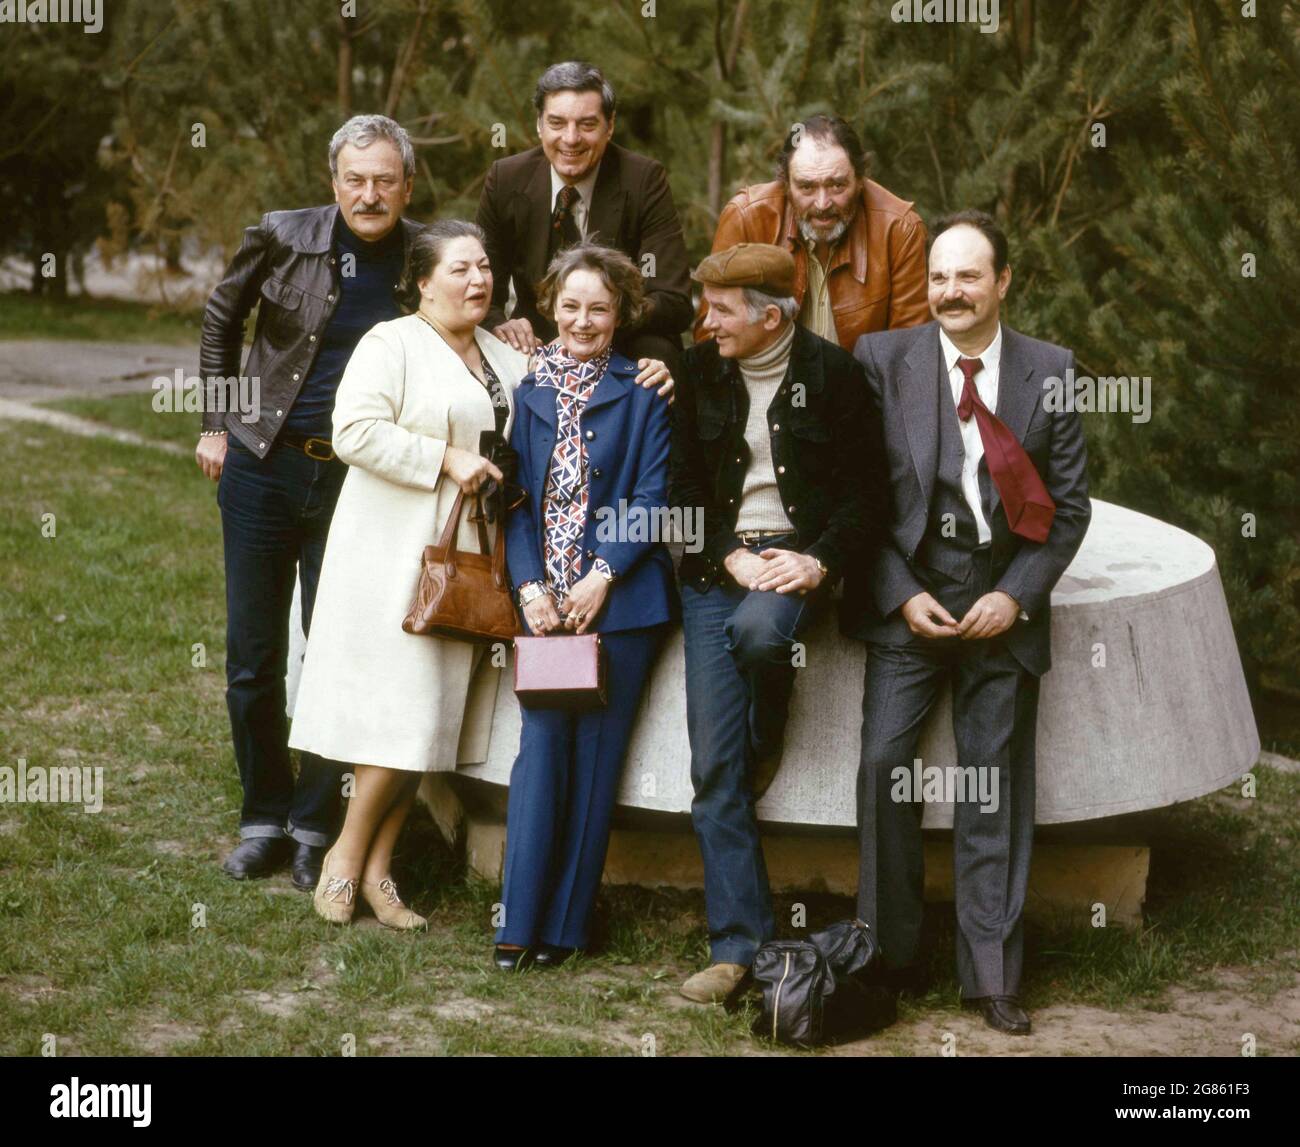 Romania, approx. 1980. Actors Amza Pellea, Draga Olteanu Matei, Sanda Toma, Silviu Stănculescu, Ghe. Cozorici, Mircea Albulescu, George Constantin. Stock Photo